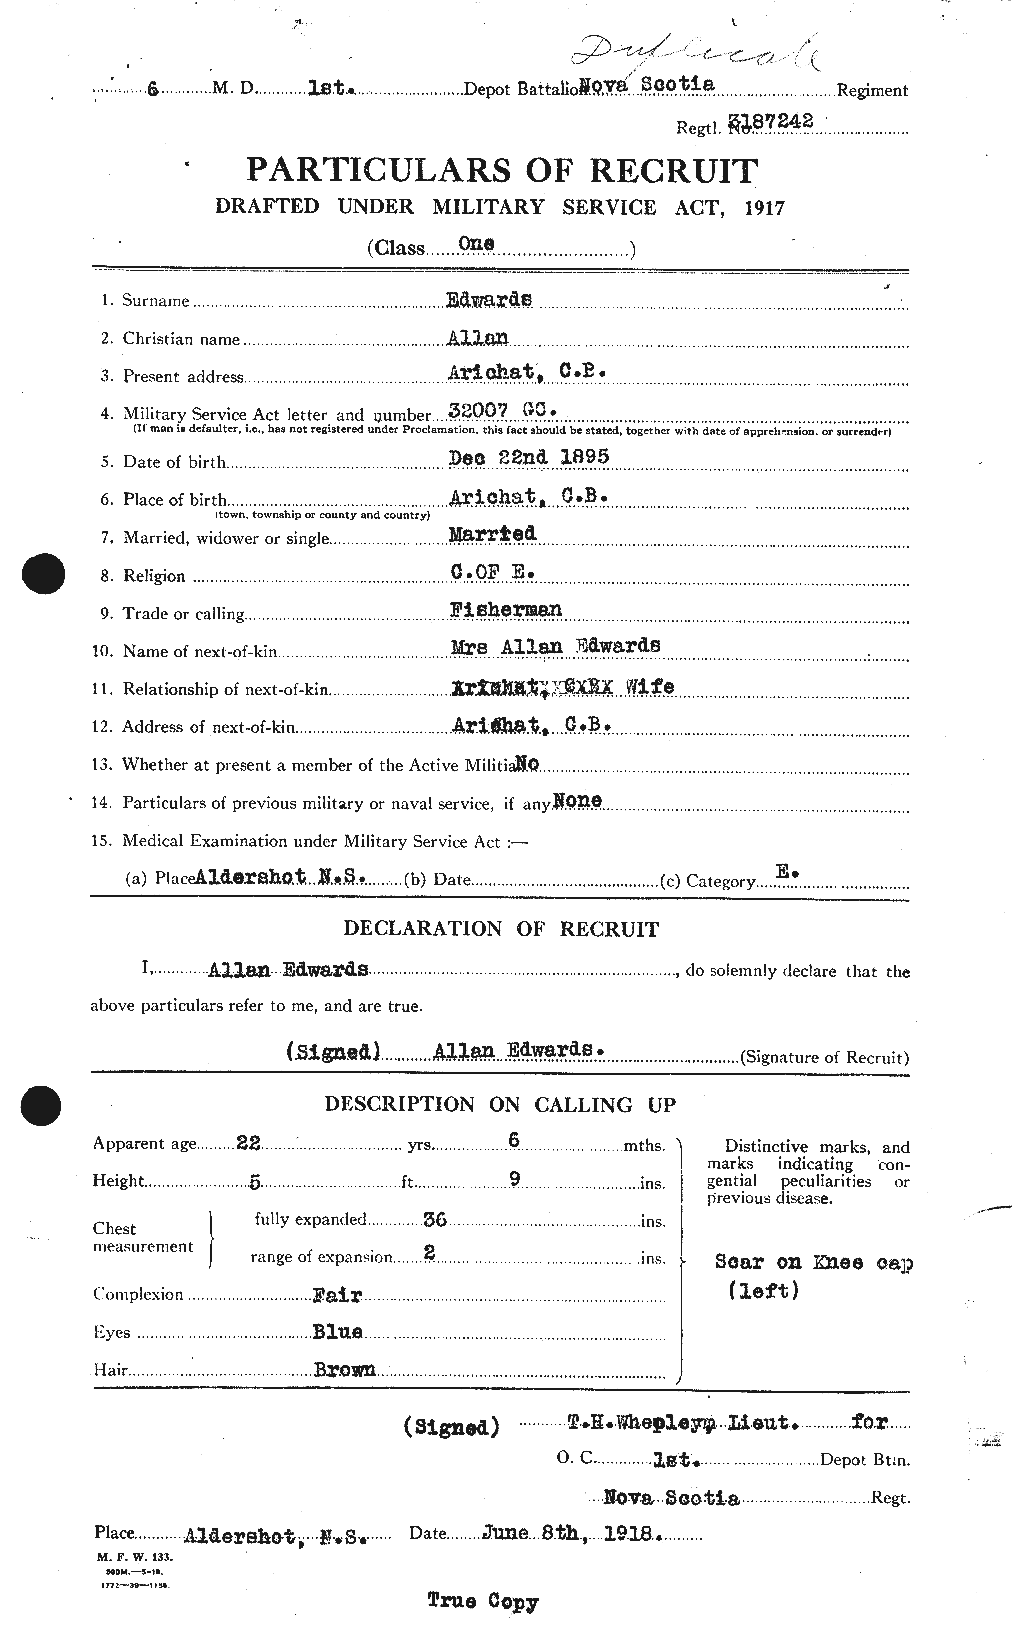 Dossiers du Personnel de la Première Guerre mondiale - CEC 313110a